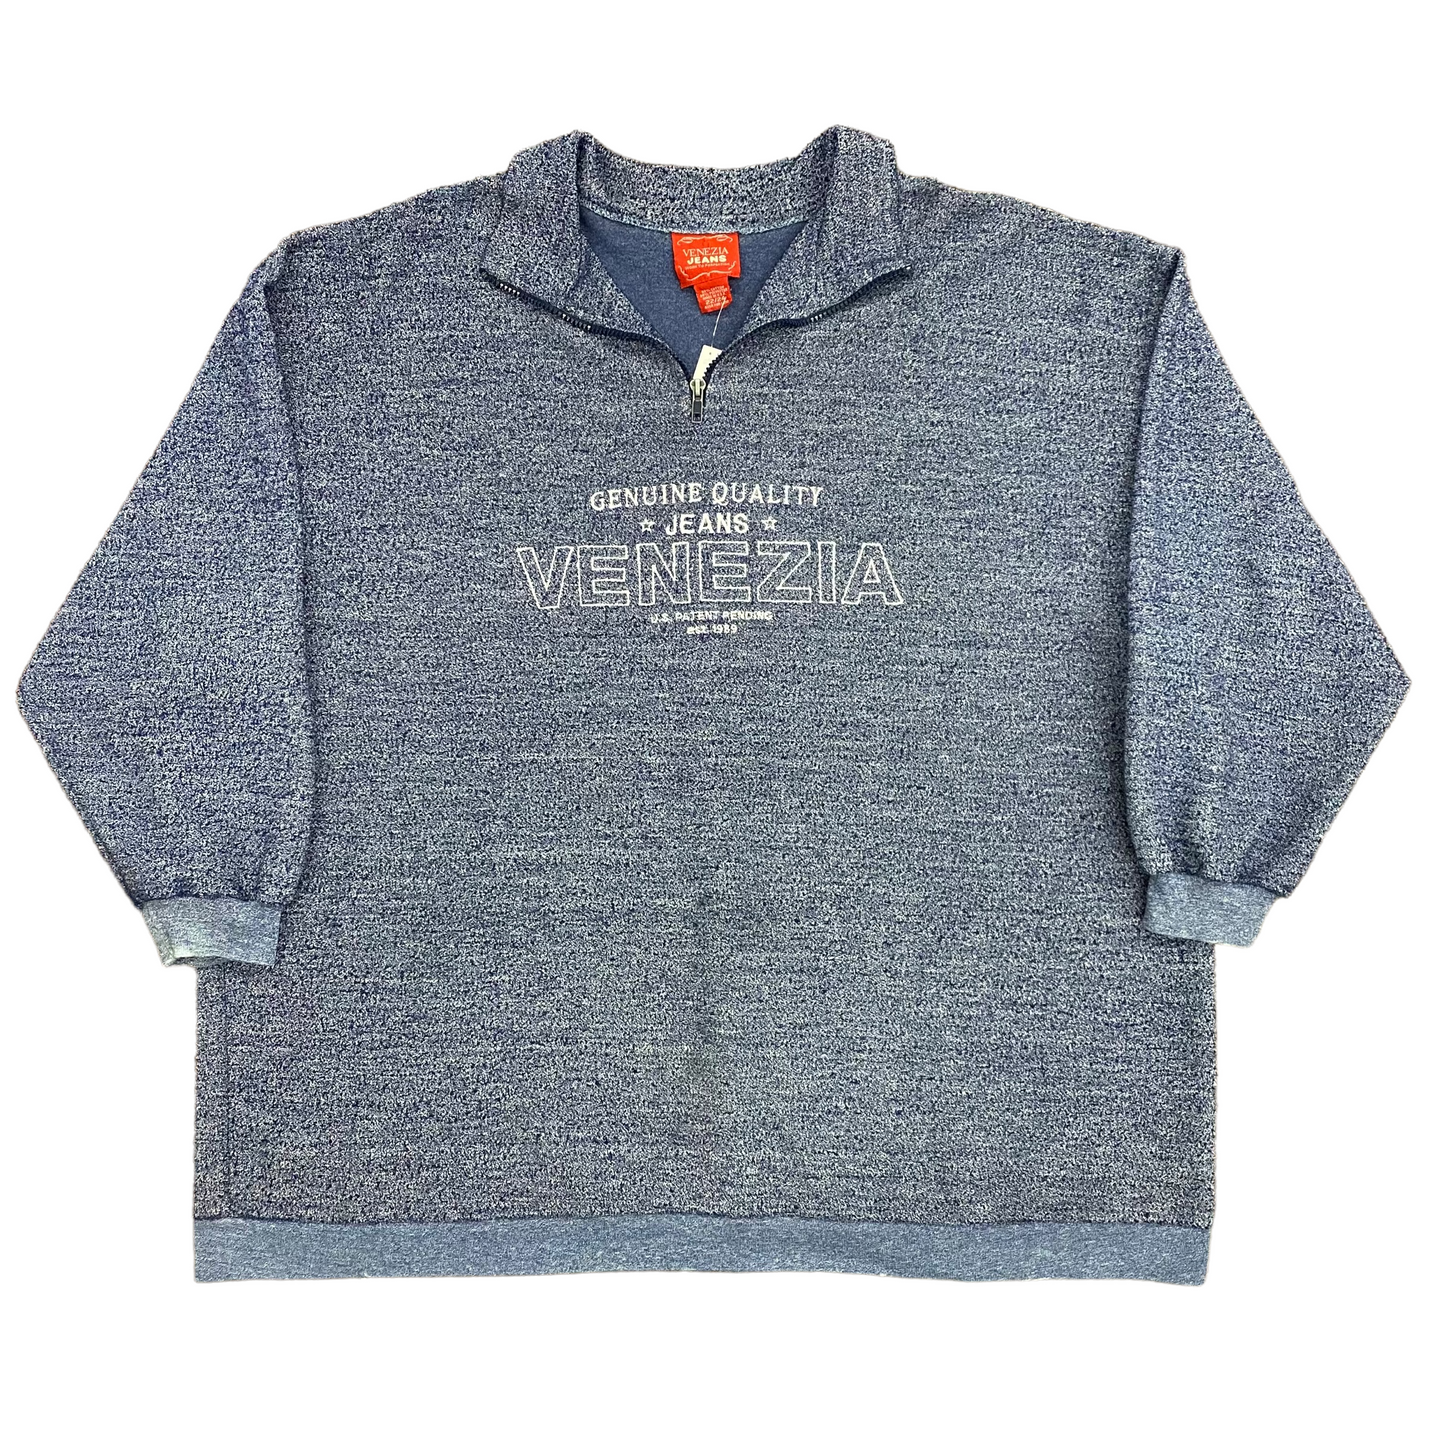 Vintage 90s Venezia Jeans Quarter Zip Sweatshirt - Size XL/XXL